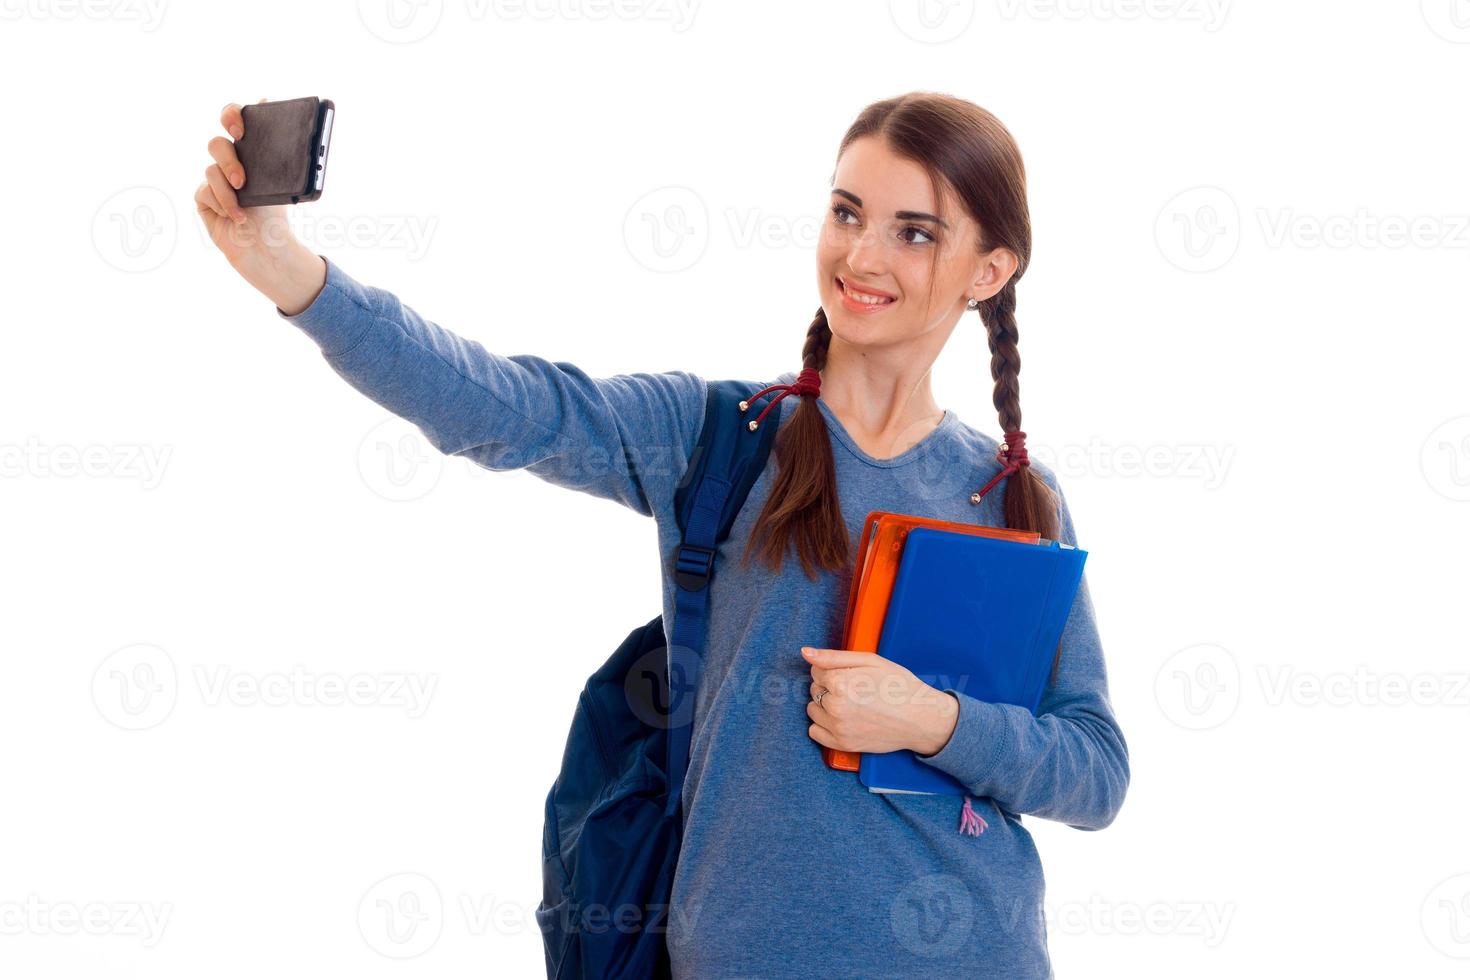 jolie adolescente avec des tresses main levée regarde dans l'appareil photo et souriant tandis que l'autre main tient l'ordinateur portable